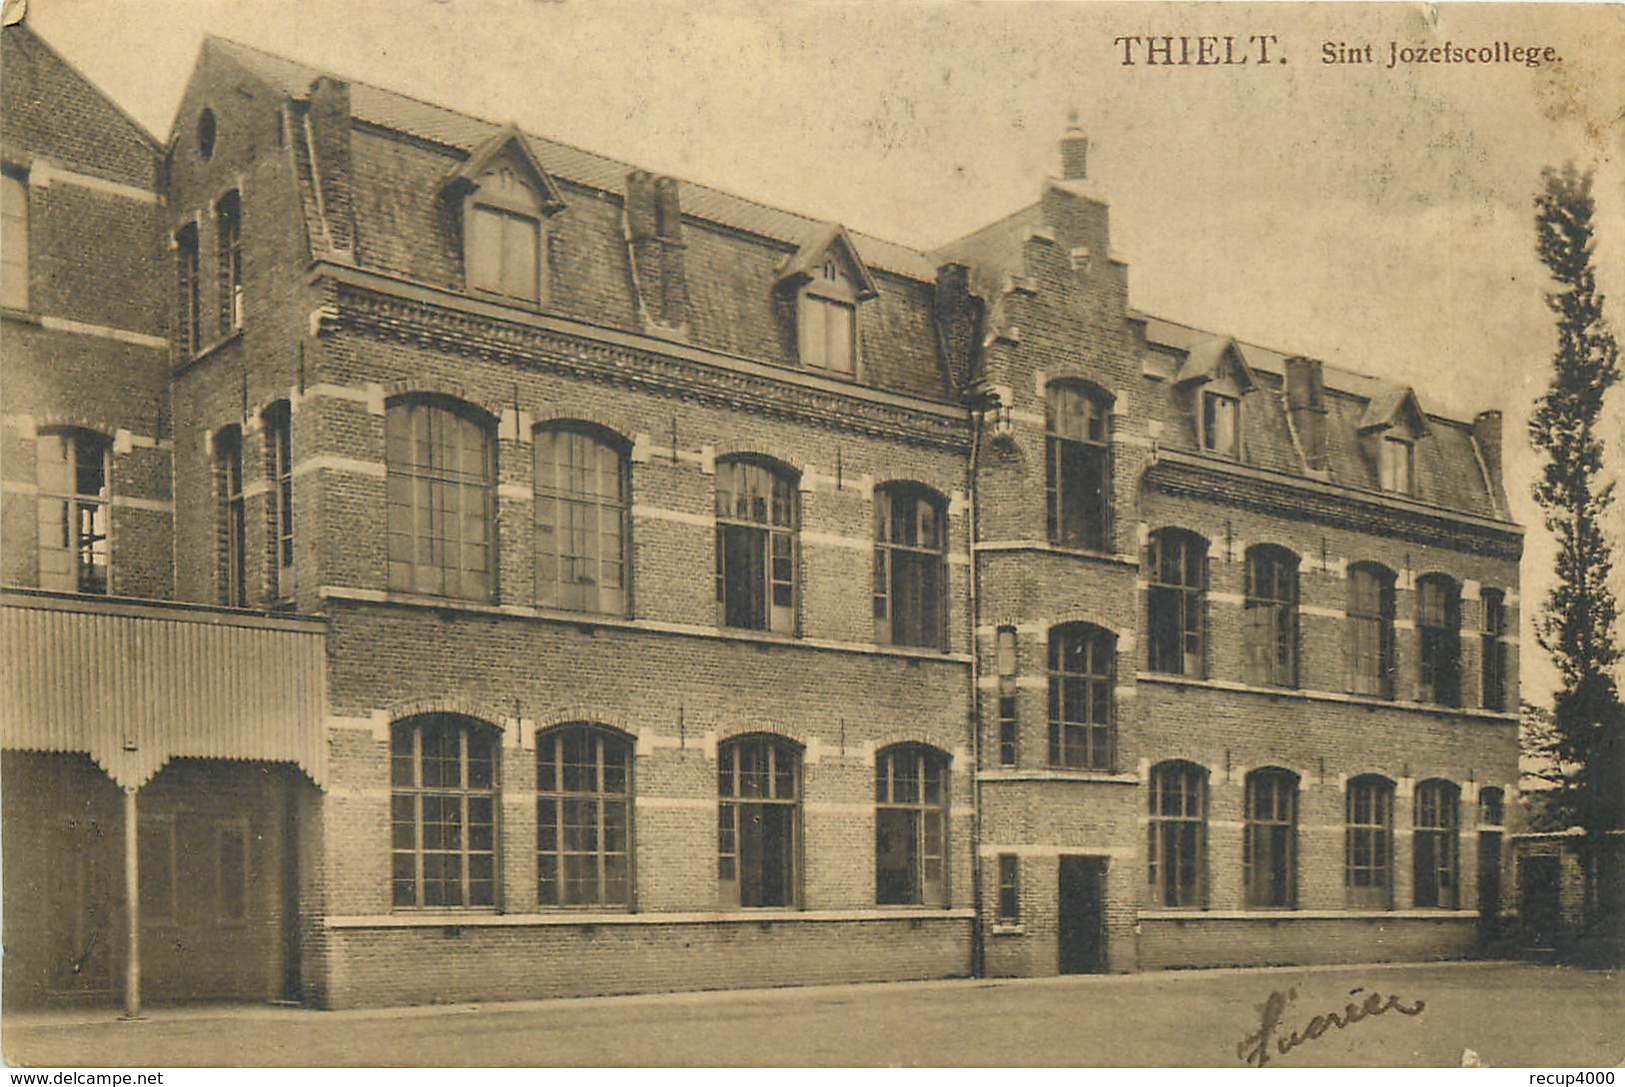 BELGIQUE THIELT Tielt Collège Saint Joseph     2 Scans - Tielt